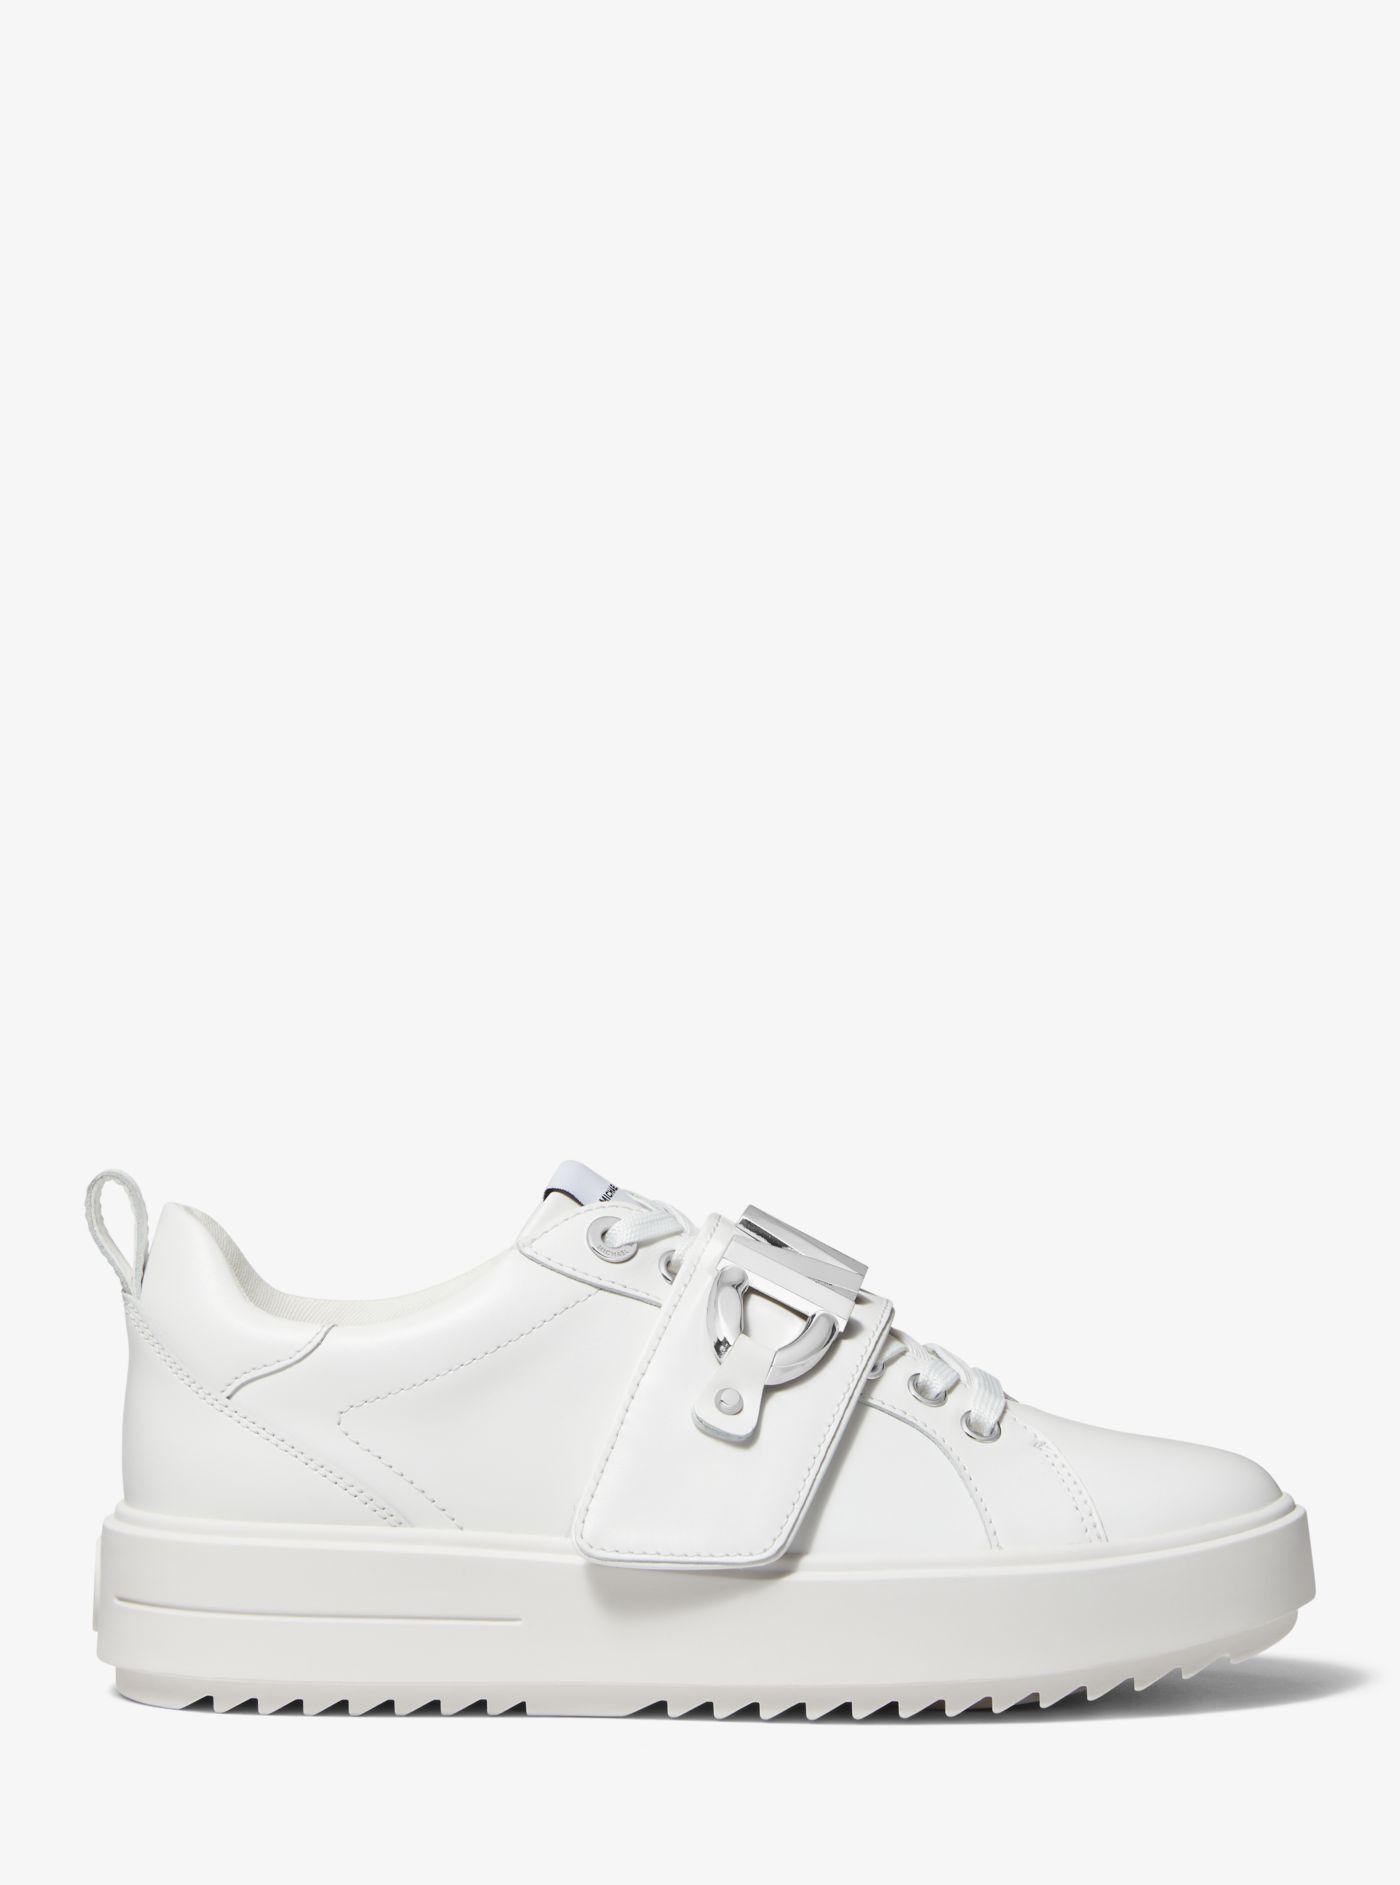 Michael Kors Emmett Logo Embellished Leather Sneaker in White | Lyst